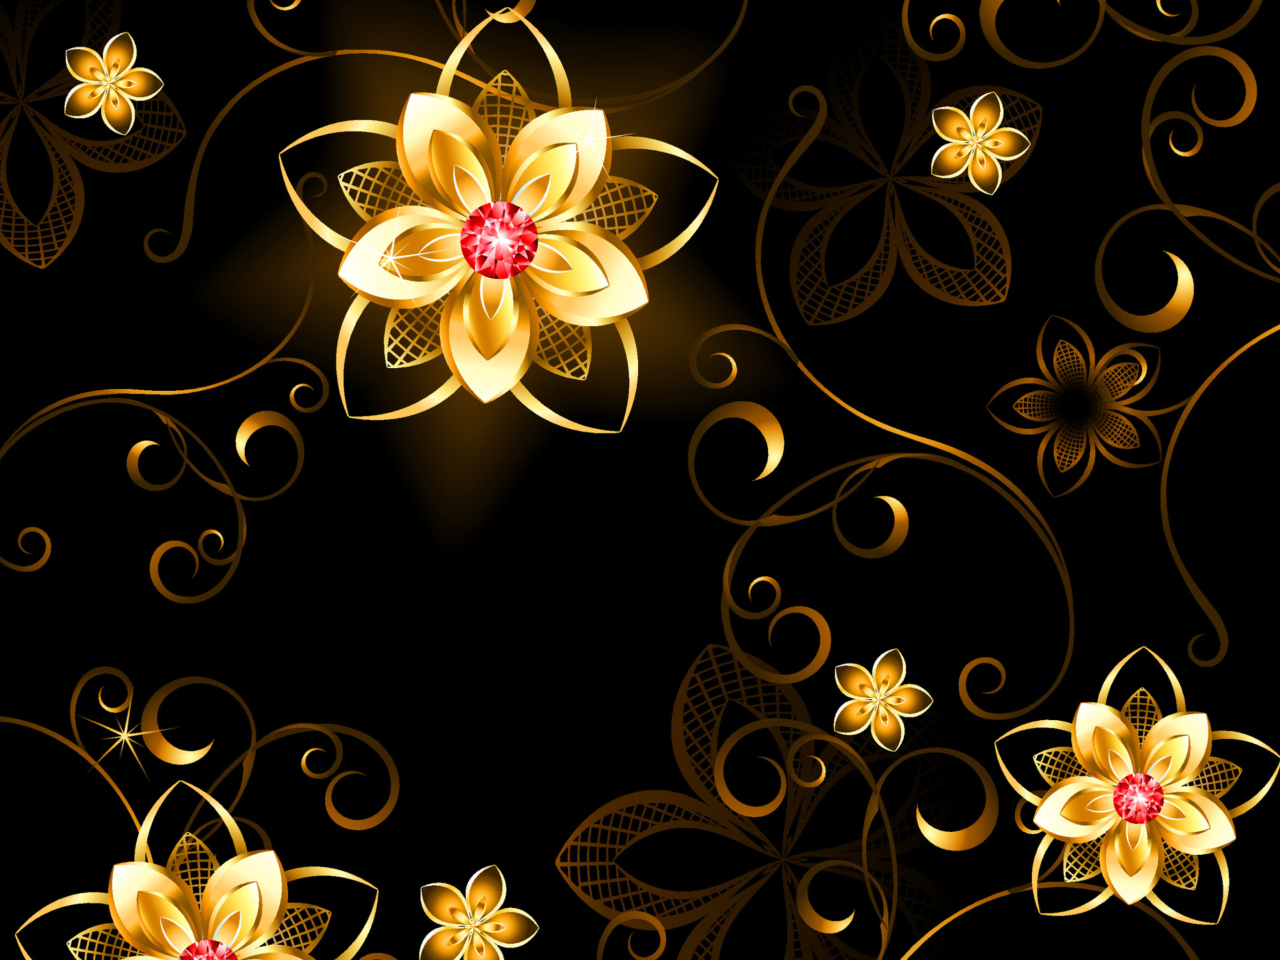 Golden Flowers wallpaper 1280x960